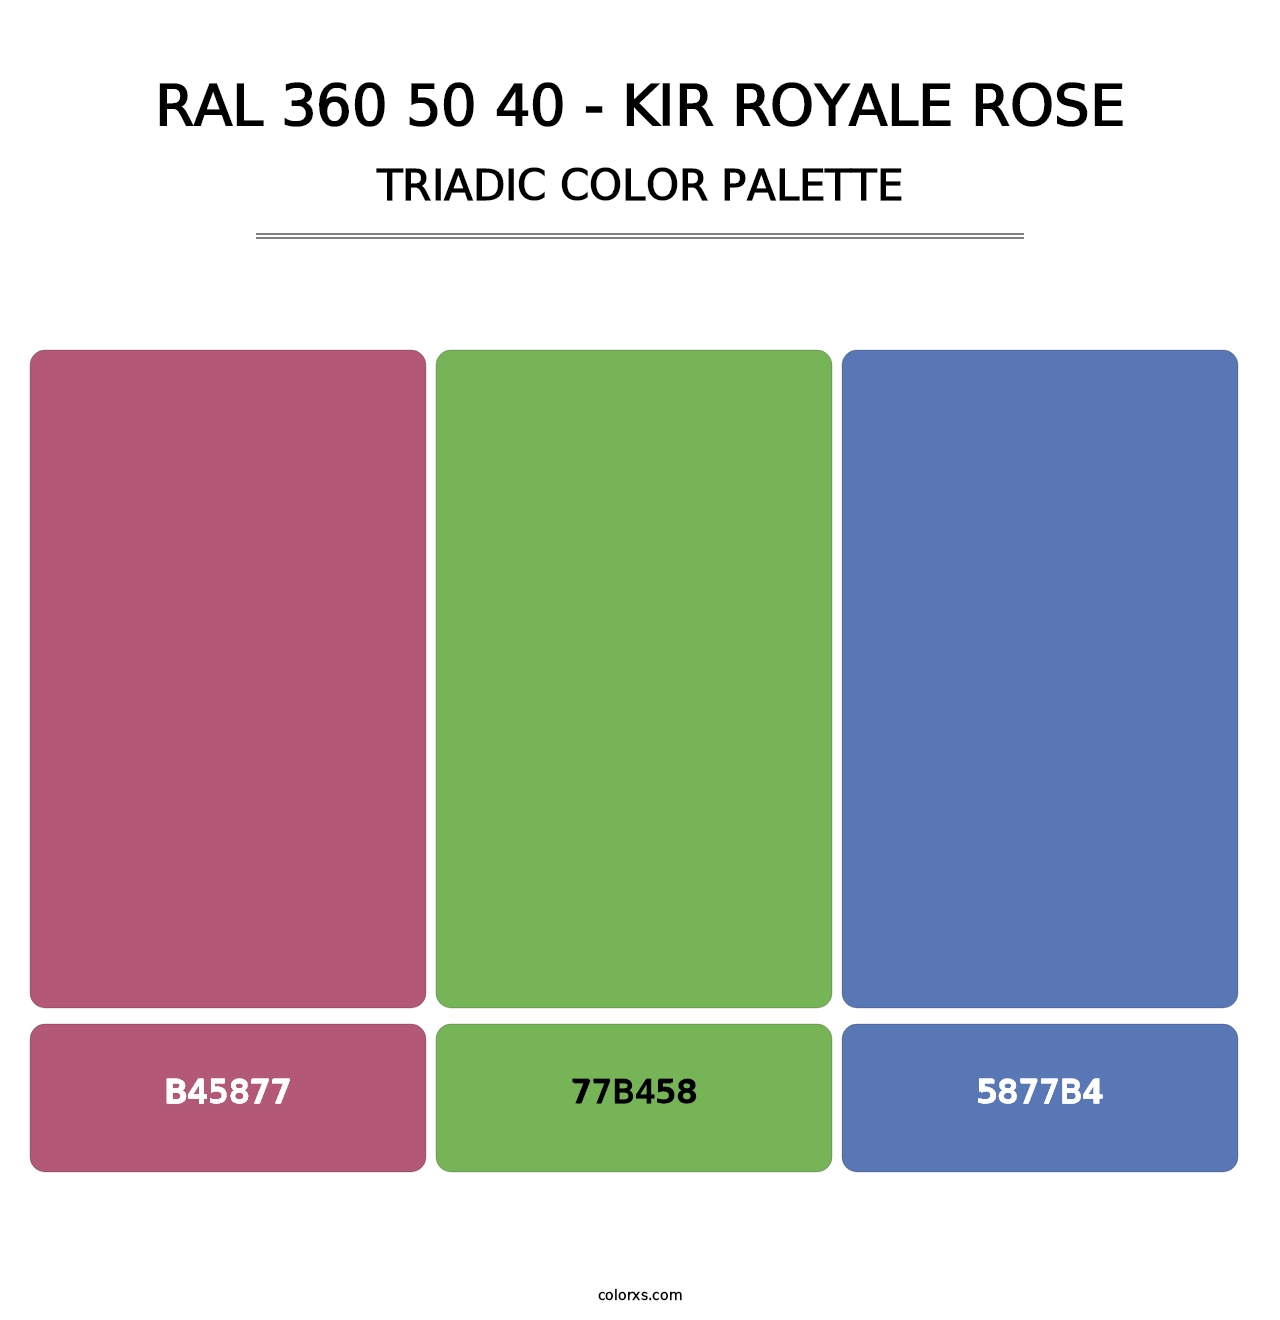 RAL 360 50 40 - Kir Royale Rose - Triadic Color Palette